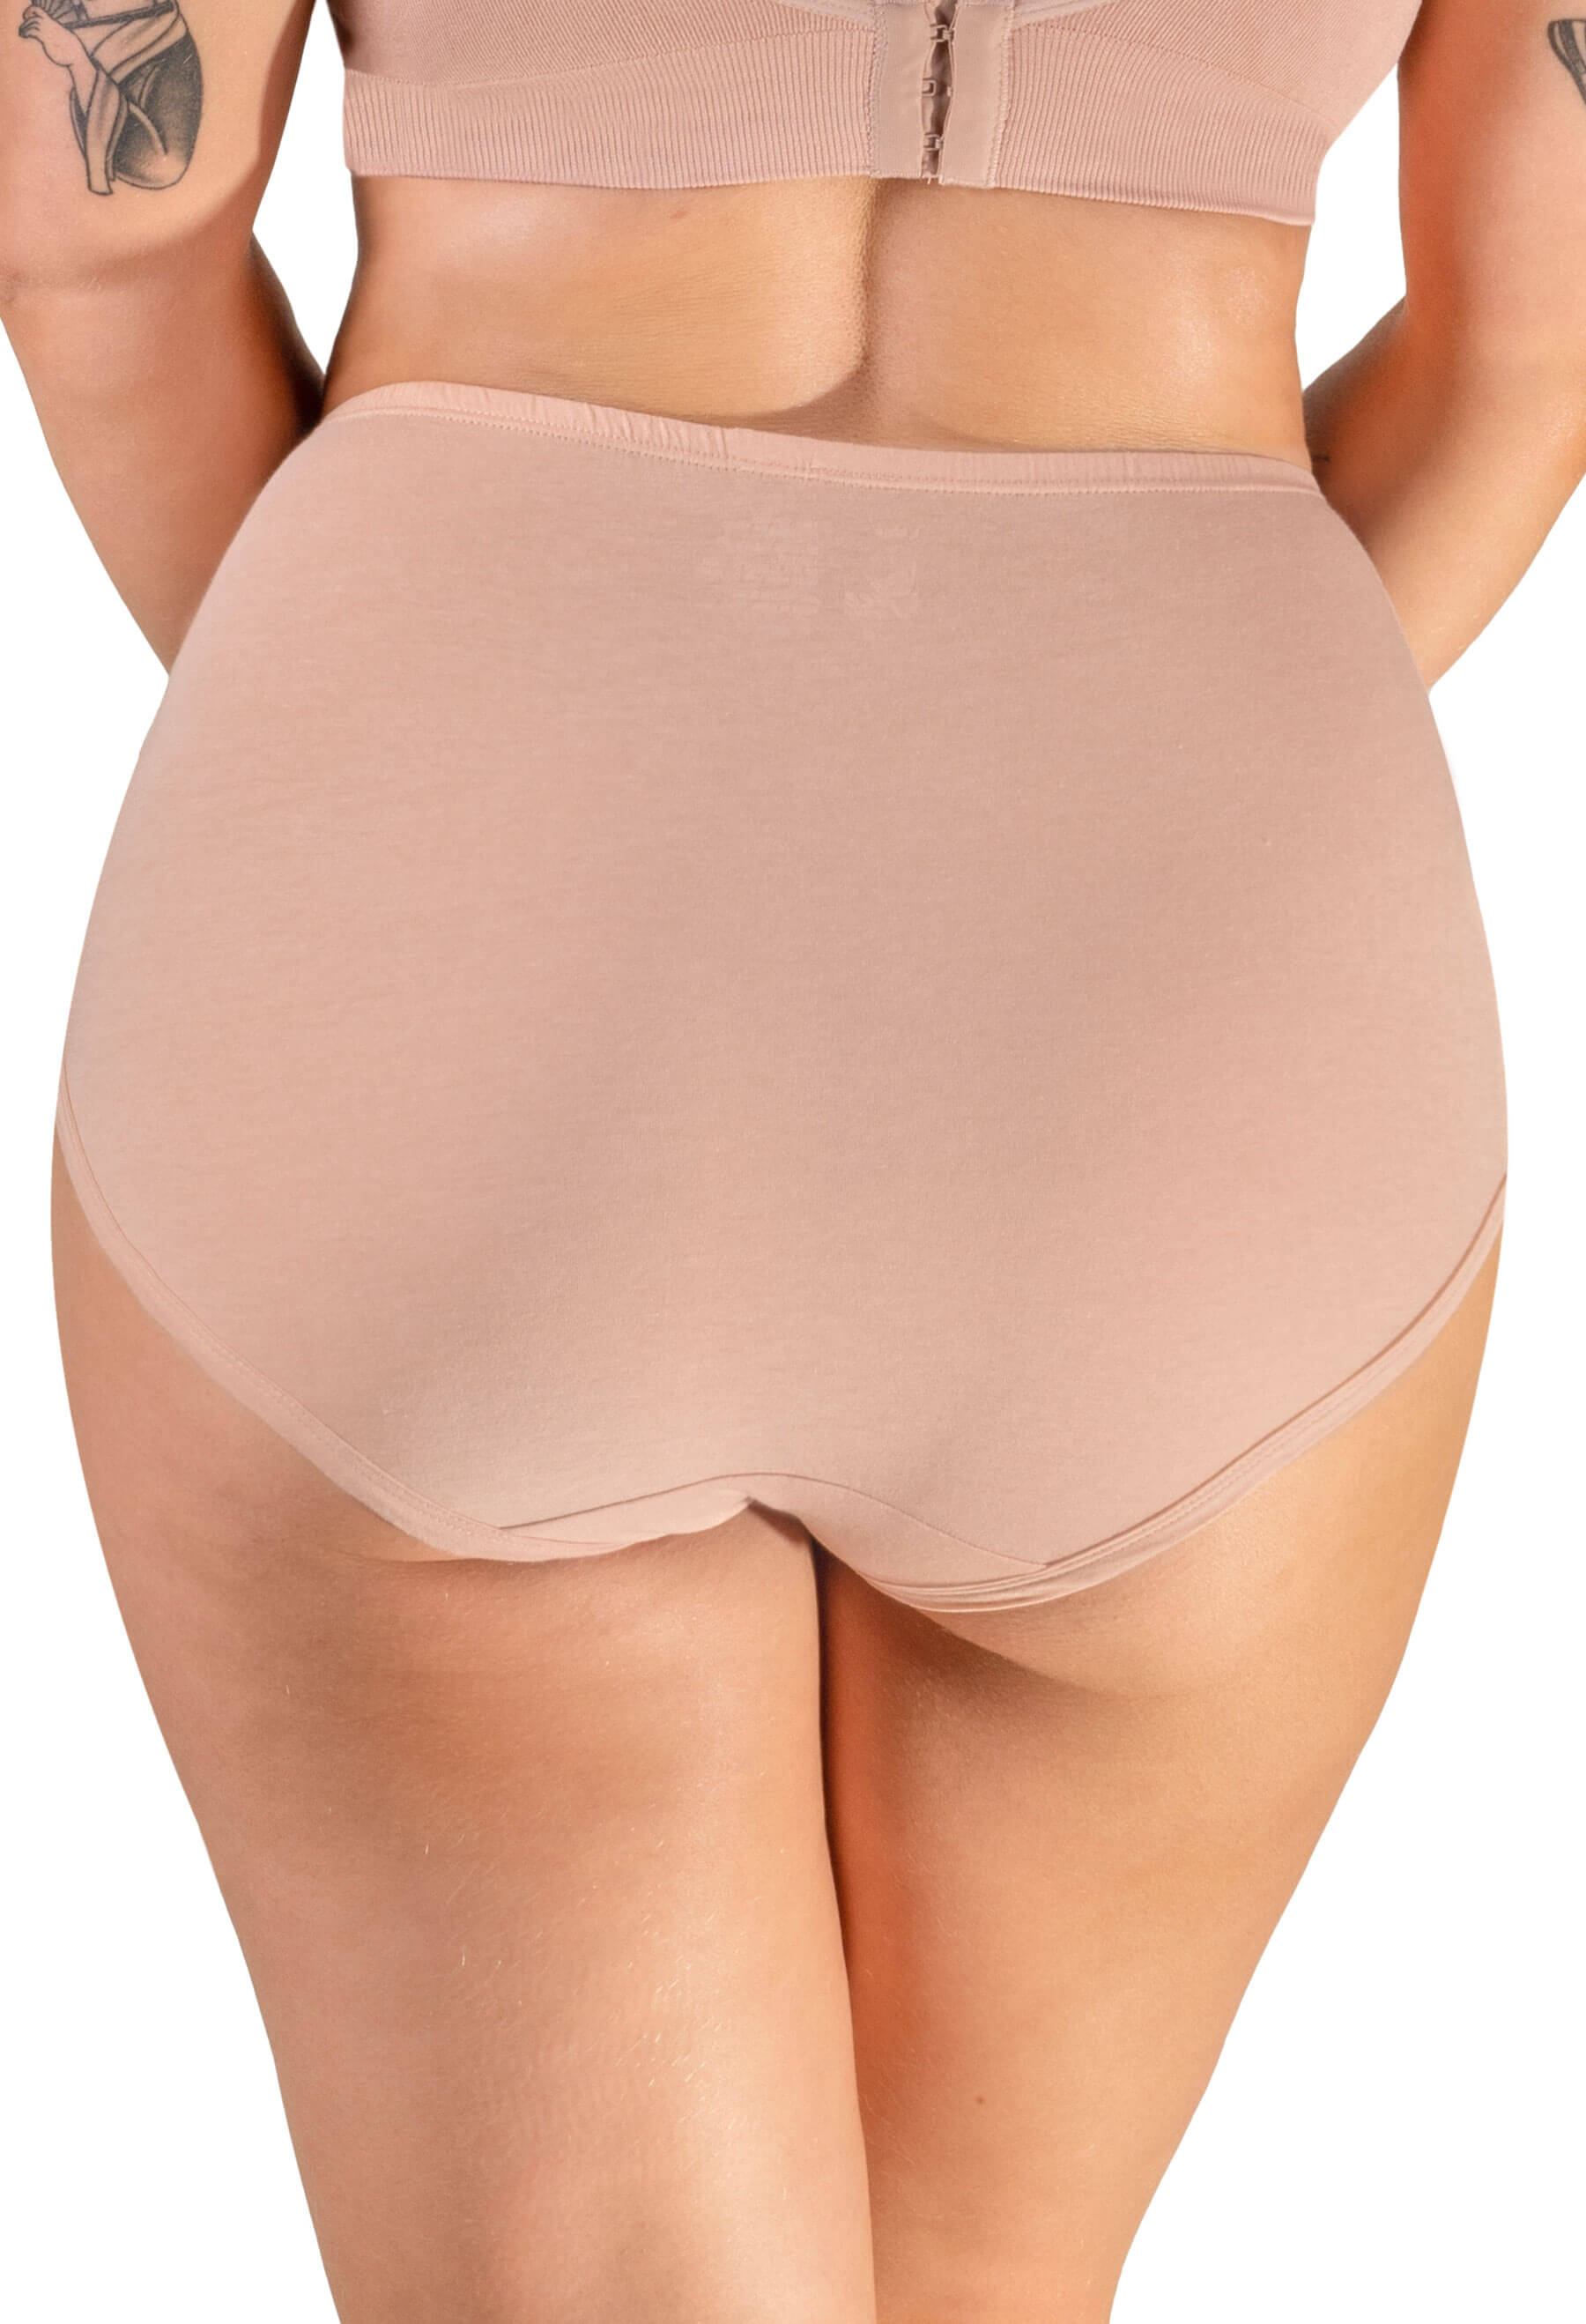 6 x Ladies Women 100% Cotton Full Size Briefs Knickers Underwear